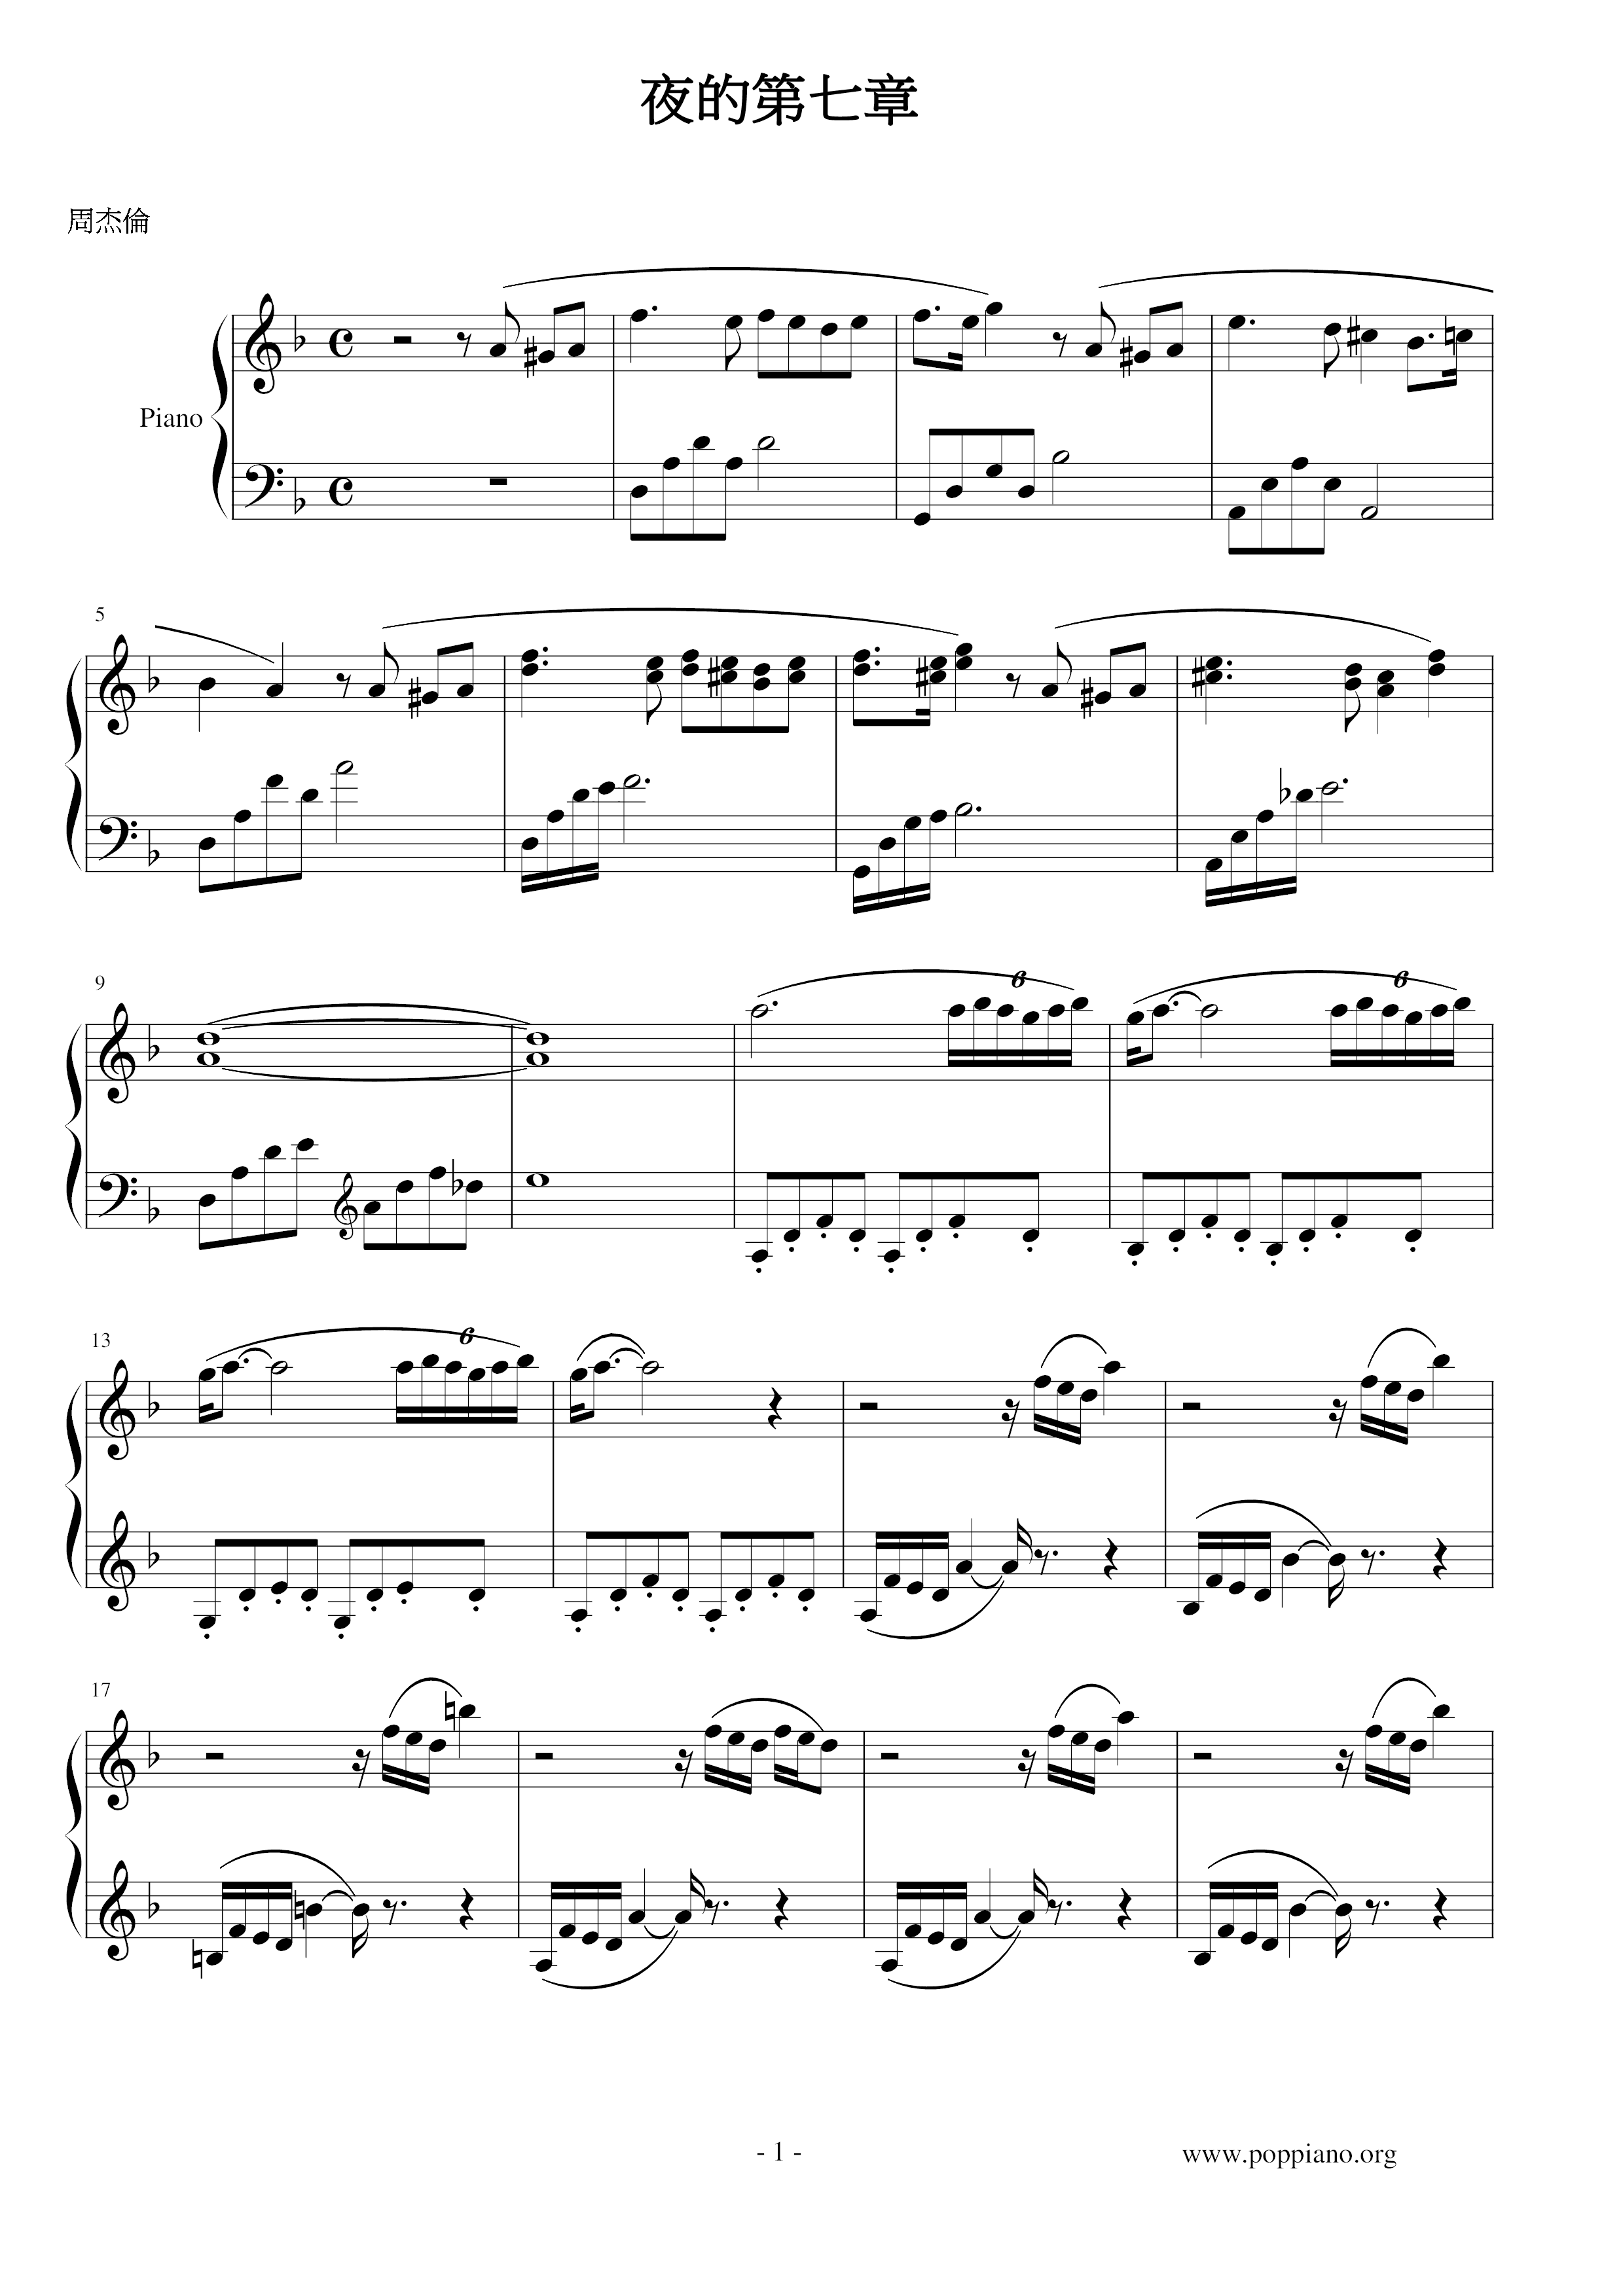 周杰伦-夜的第七章 琴谱/五线谱pdf-香港流行钢琴